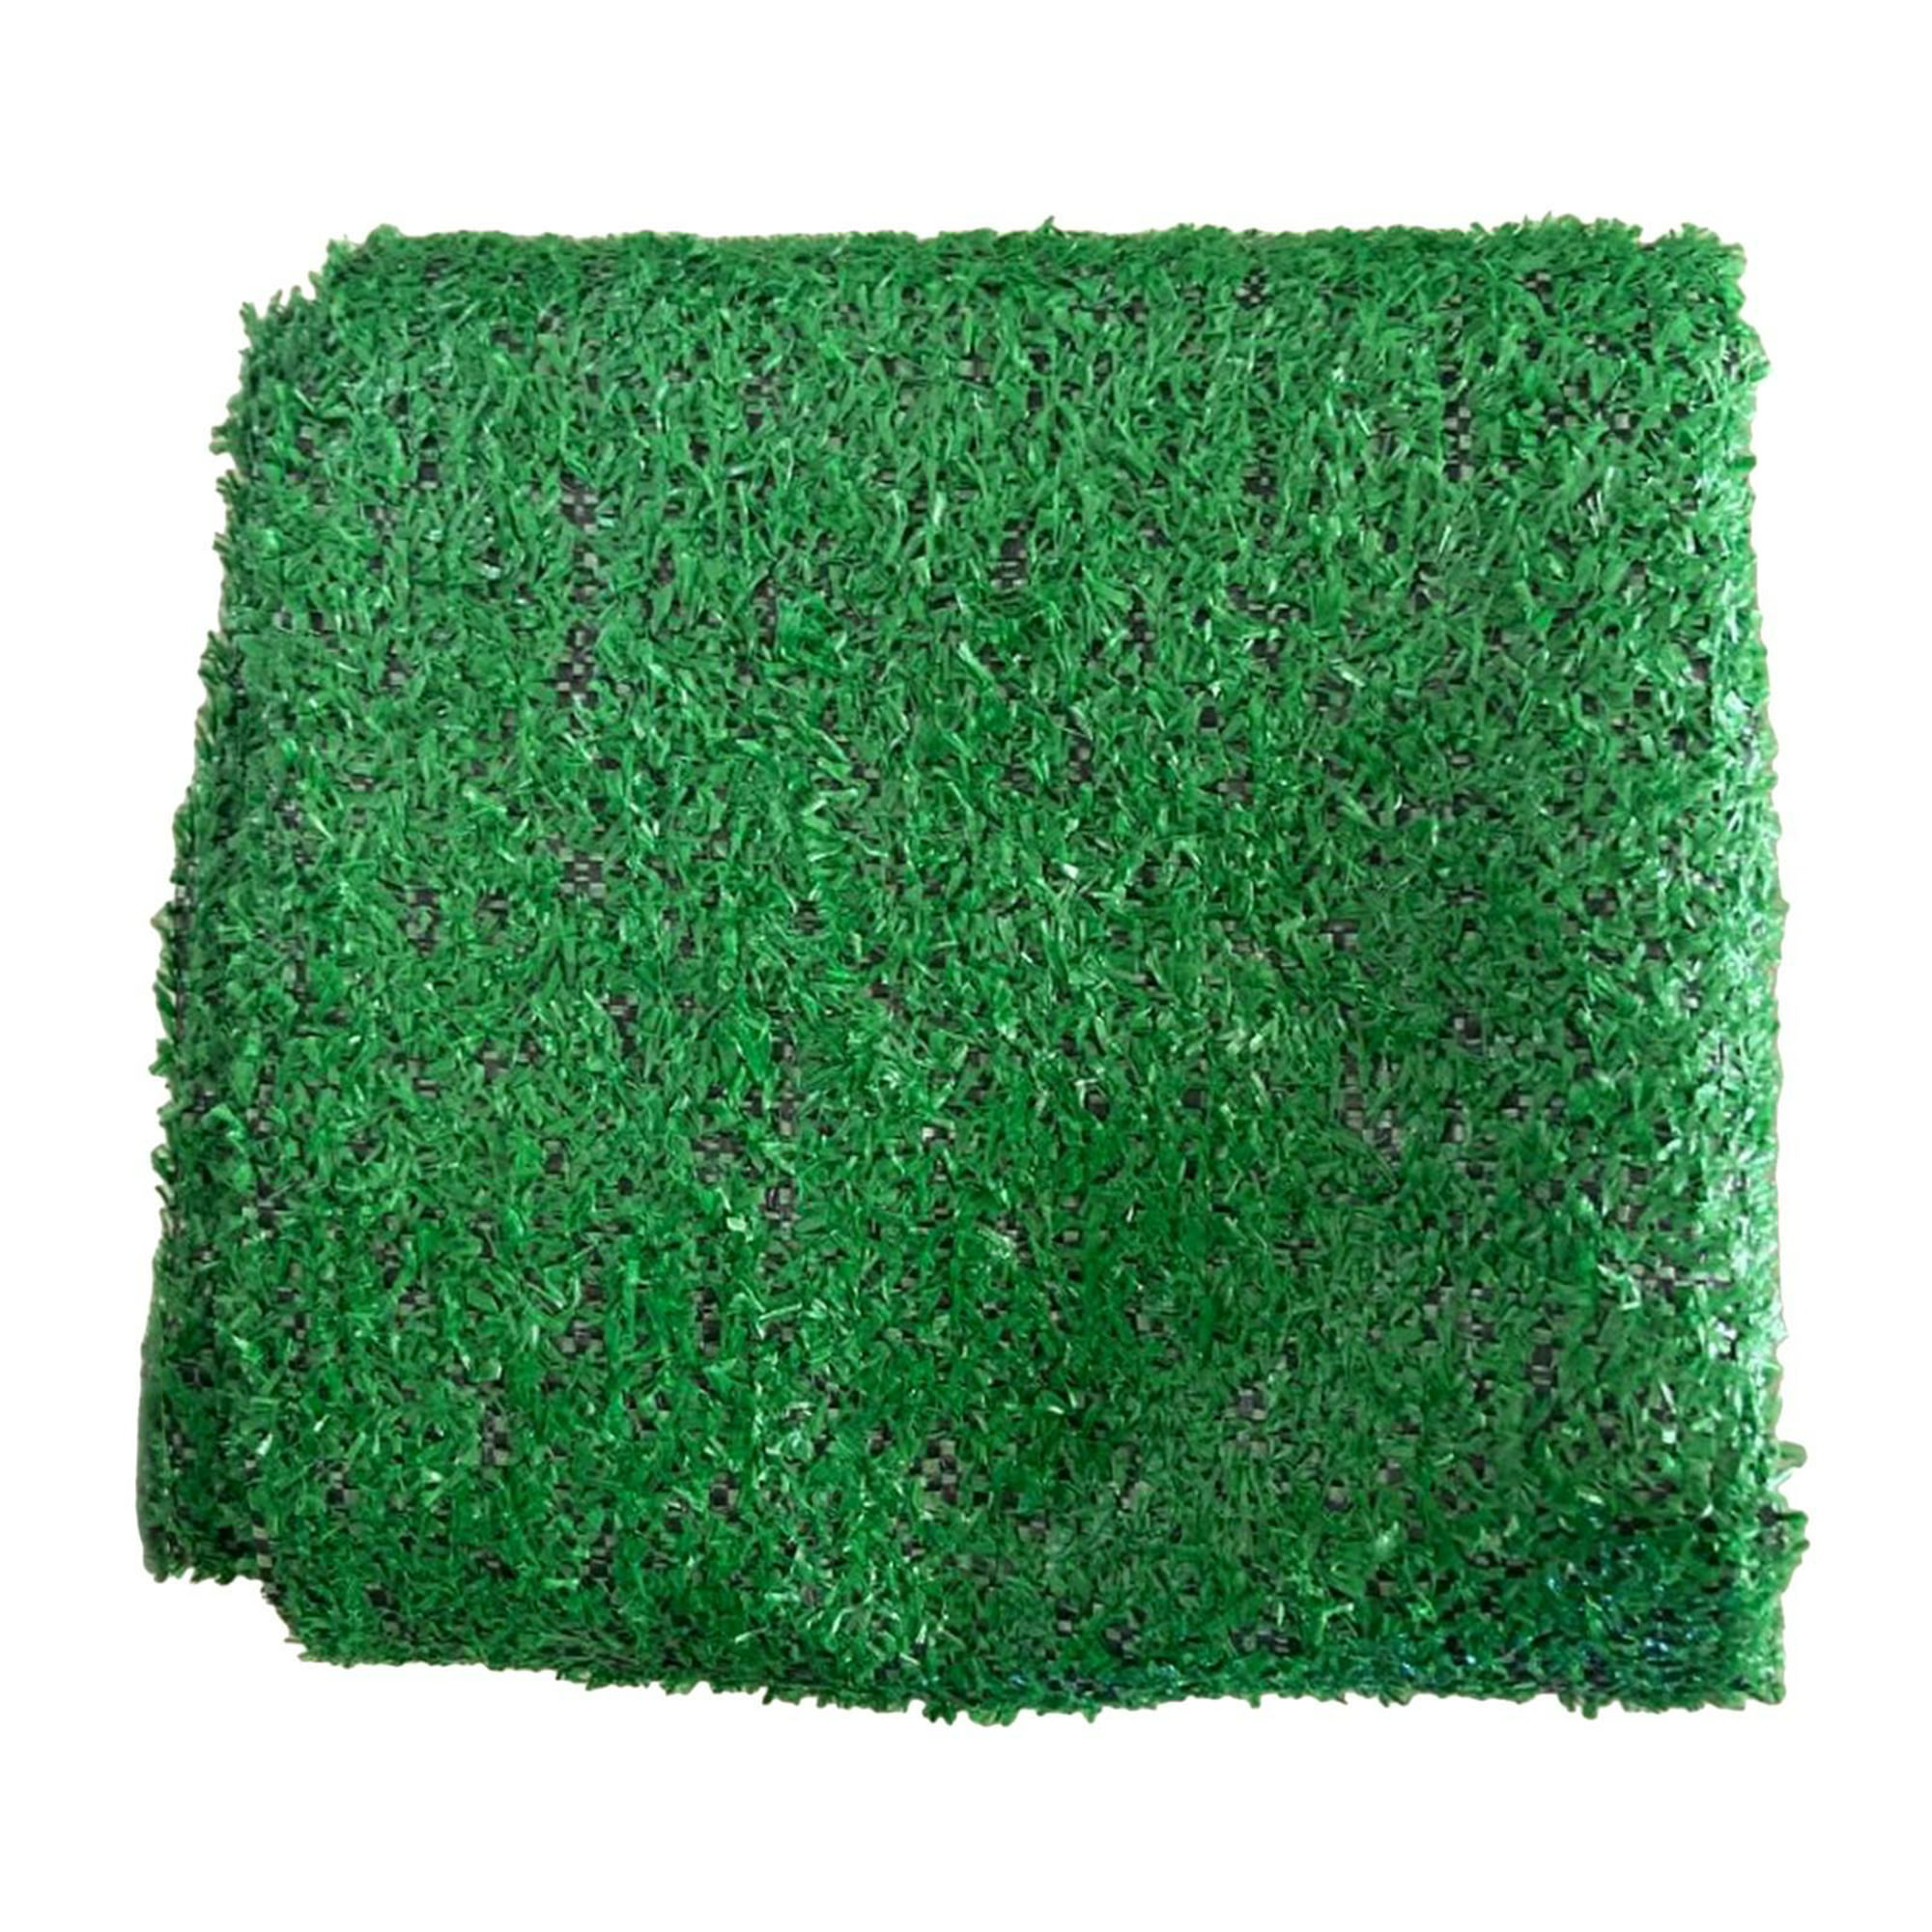 Hierba artificial realista, 9 pies x 28 pies, césped artificial sintético,  alfombra de césped verde de 0.79 pulgadas con agujeros de drenaje para